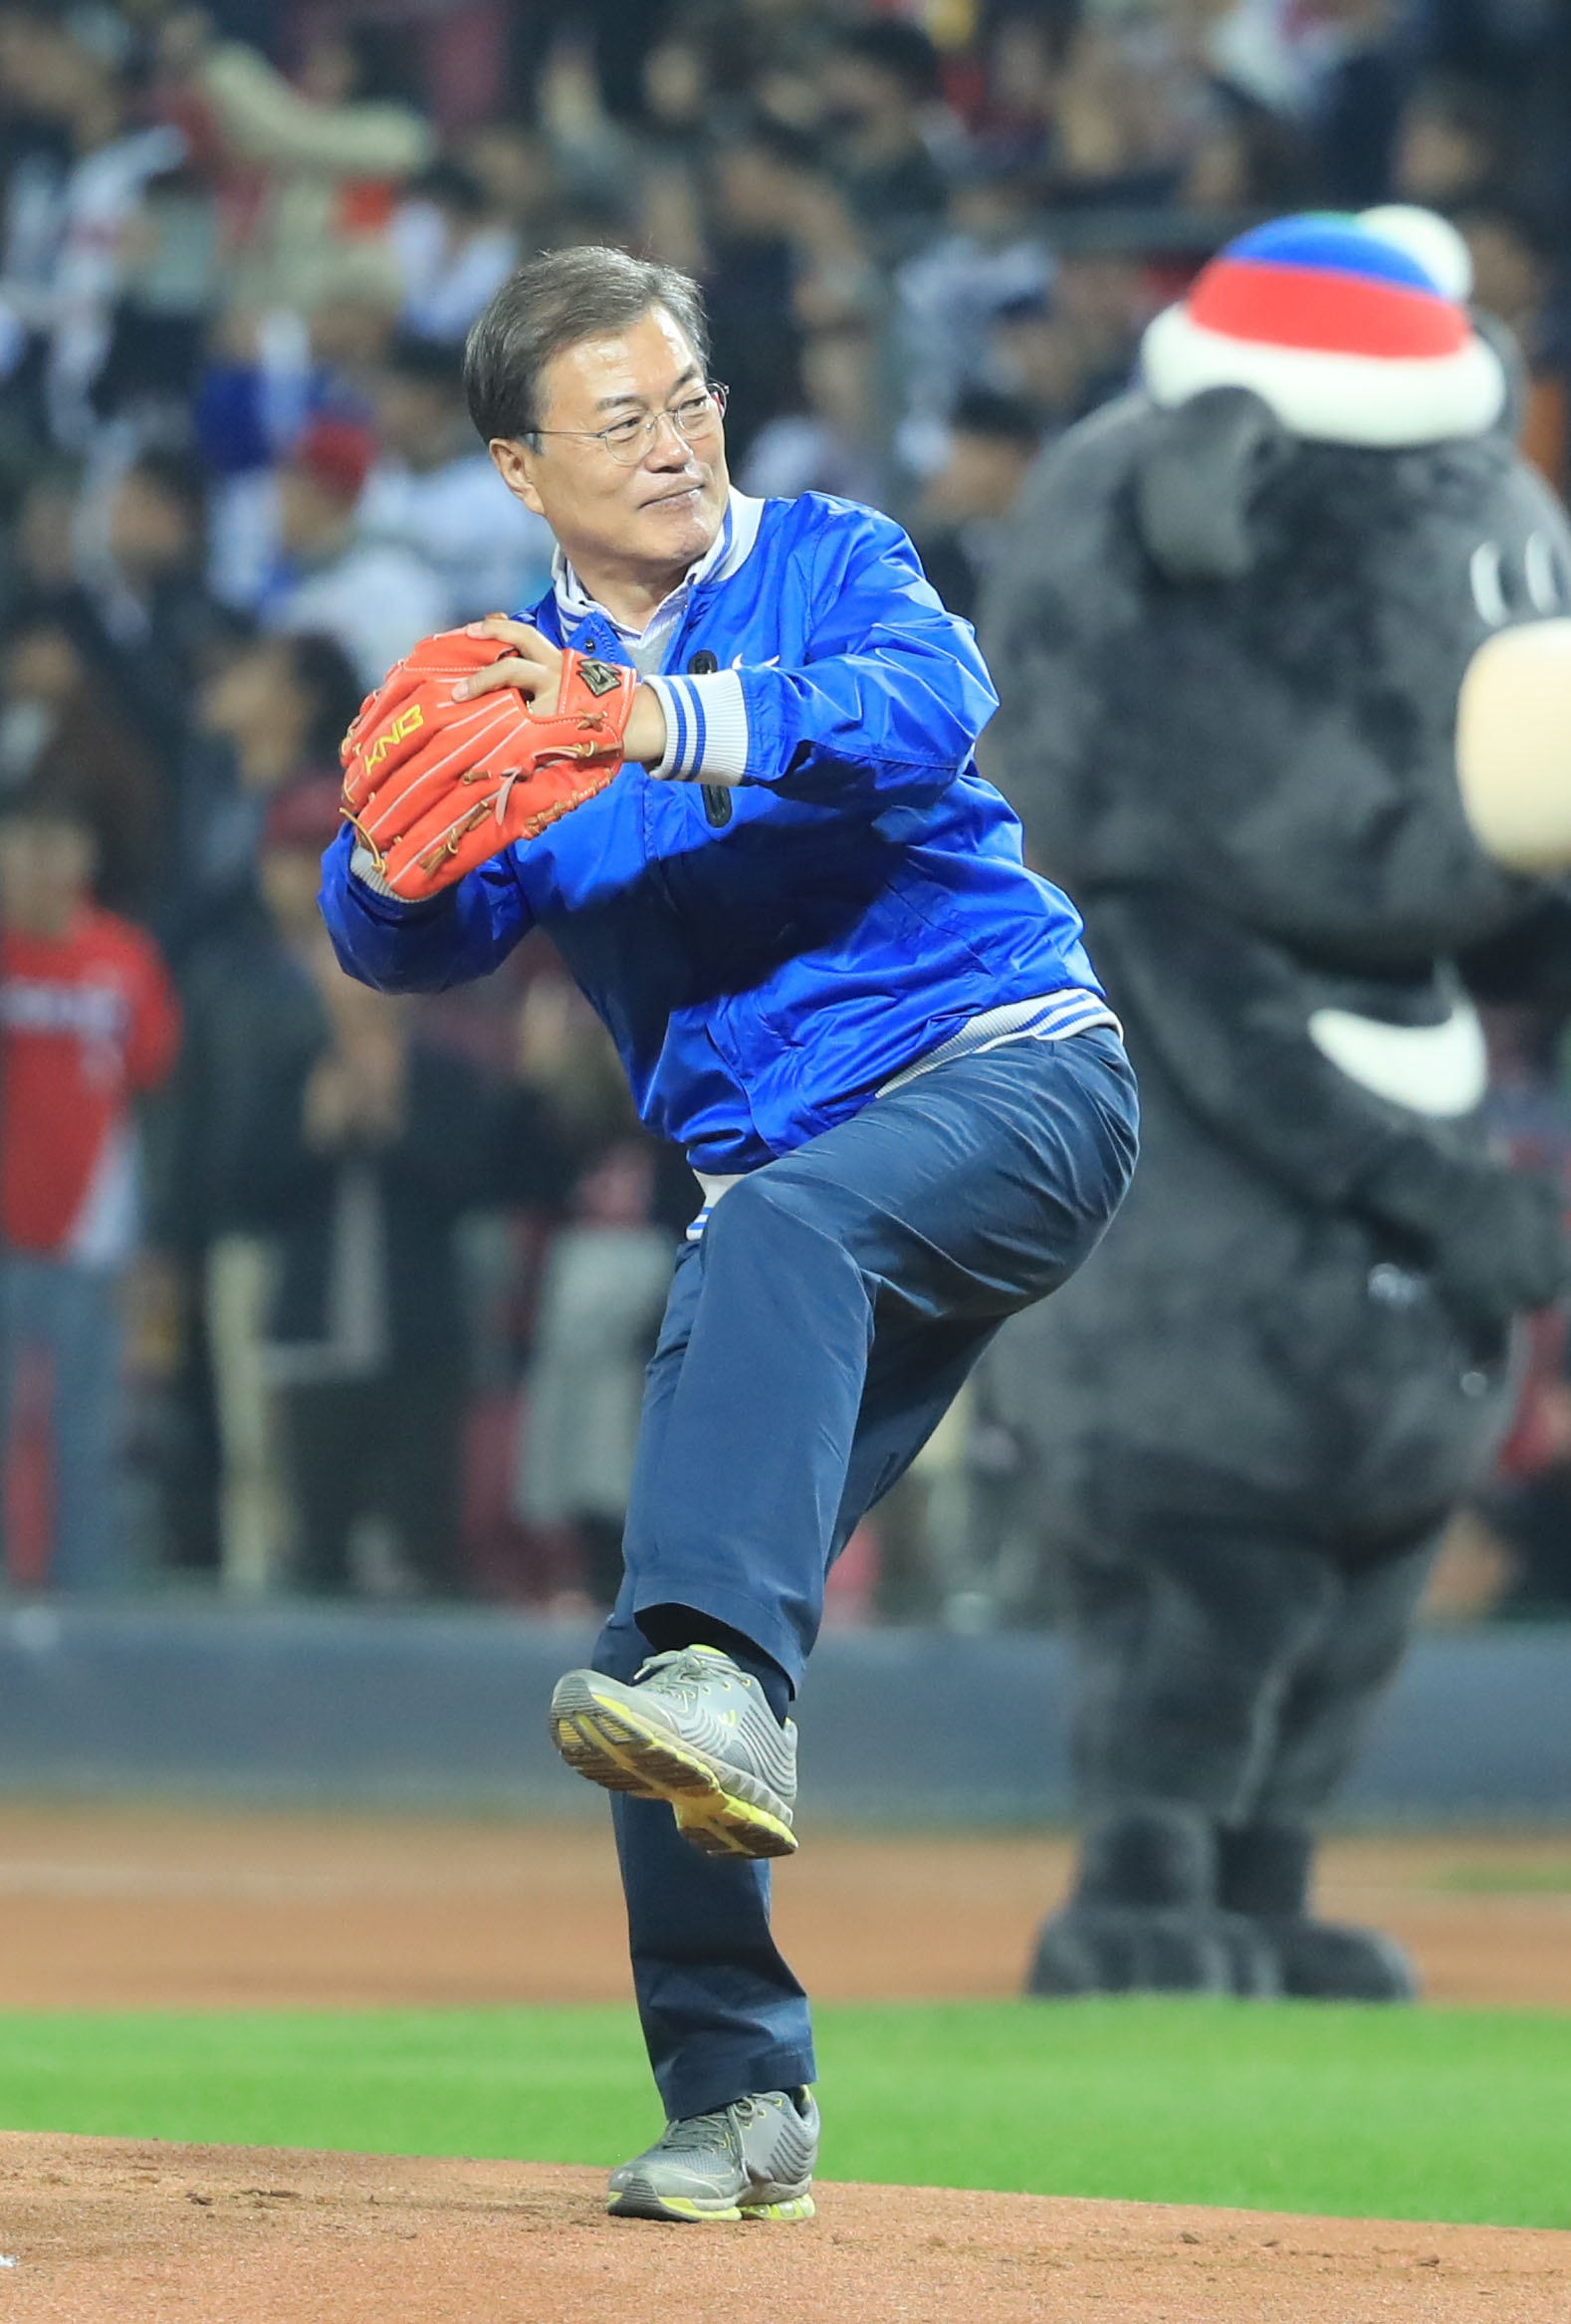 (광주=연합뉴스) 서명곤 기자 = 문재인 대통령이 25일 오후 광주광역시 광주-KIA 챔피언스필드에서 열린 2017 프로야구 한국시리즈 1차전 두산 베어스와 KIA 타이거즈의 경기에서 경기 시작을 알리는 시구를 하고 있다.